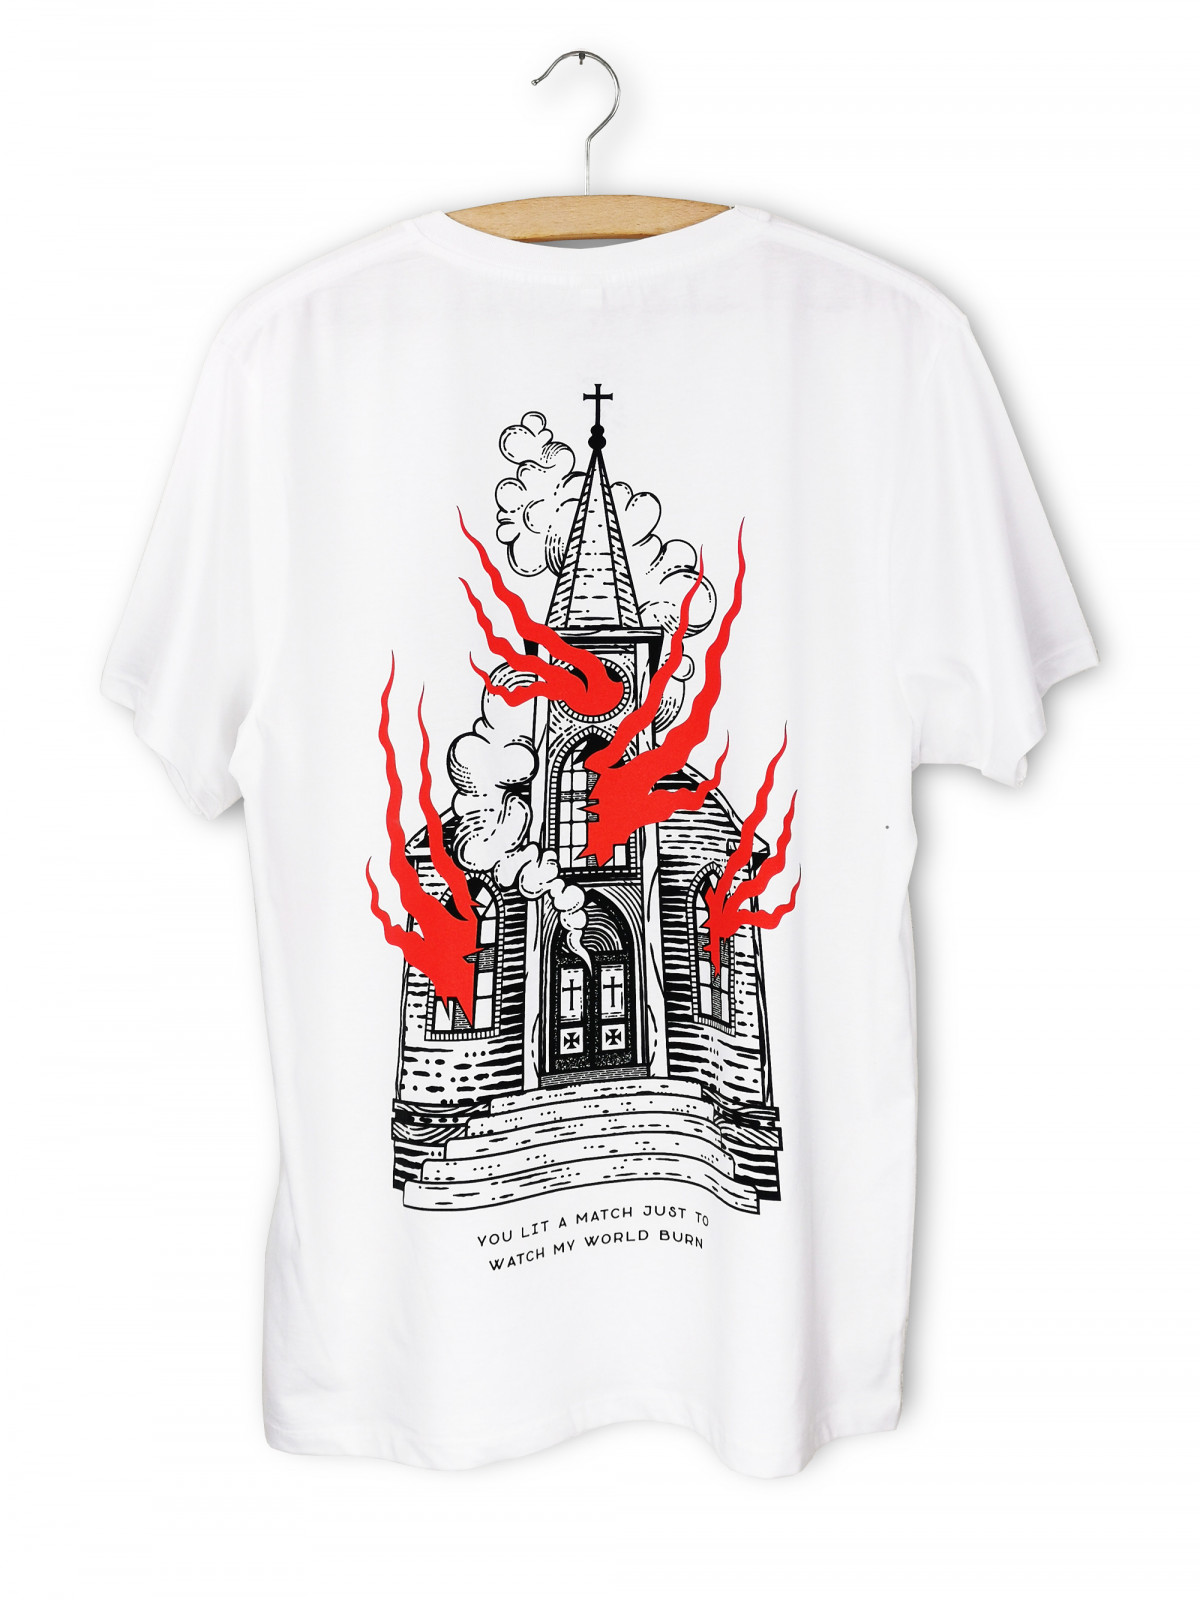 T-shirt 'Burning Church' en coton organique pour hommes et femmes de la marque suisse streetwear bastonnade clothing.